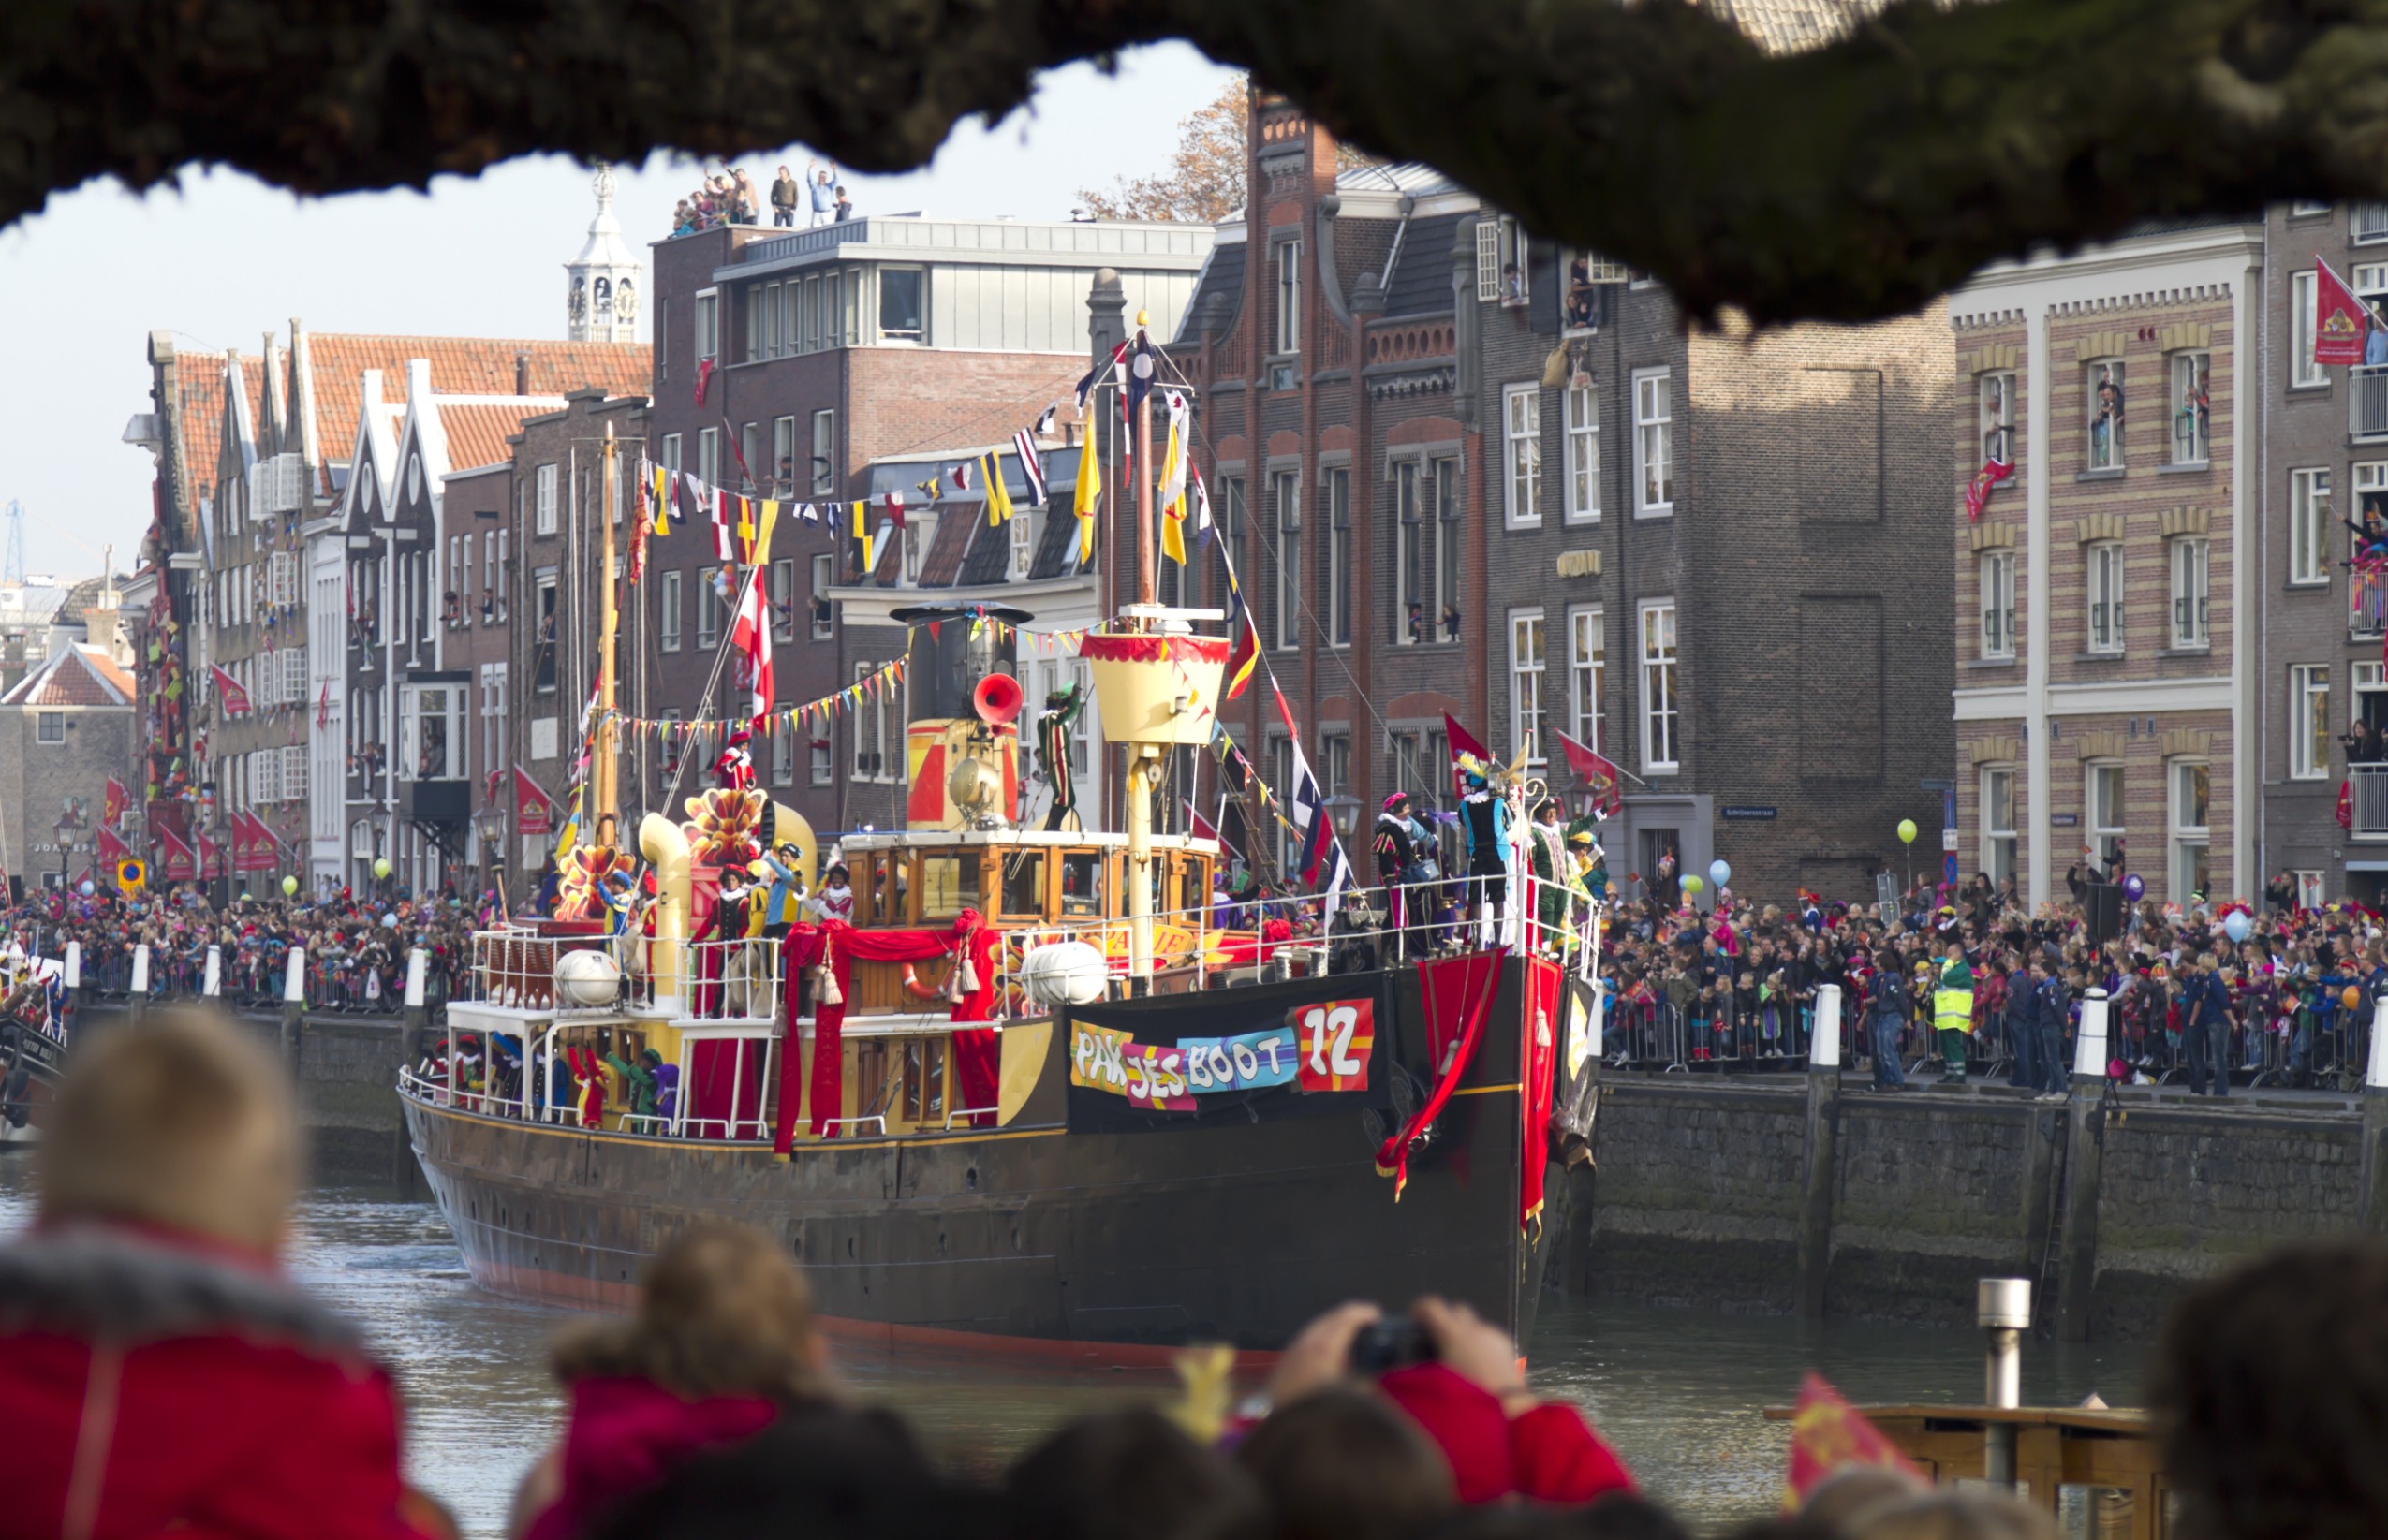 De magische reis van Sinterklaas: Pakjesboot 12 vaart door de Nederlandse wateren, vol met cadeaus en pepernoten, klaar om de harten van jong en oud te verwarmen.